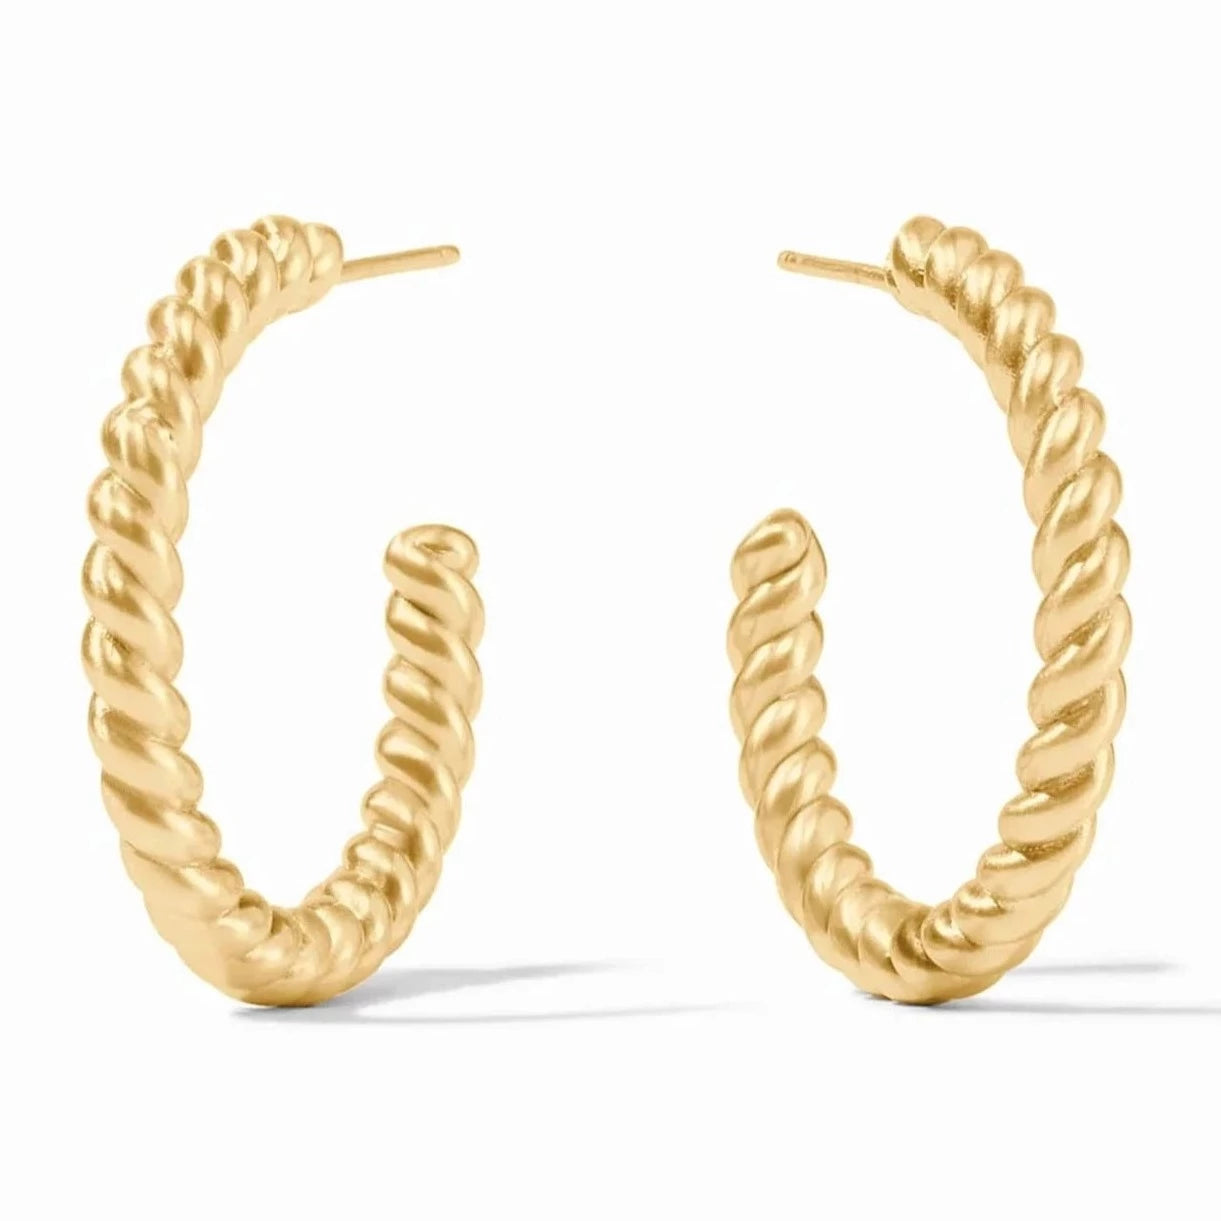 Julie Vos 24K Gold Plated Nassau Hoop Earrings, Medium